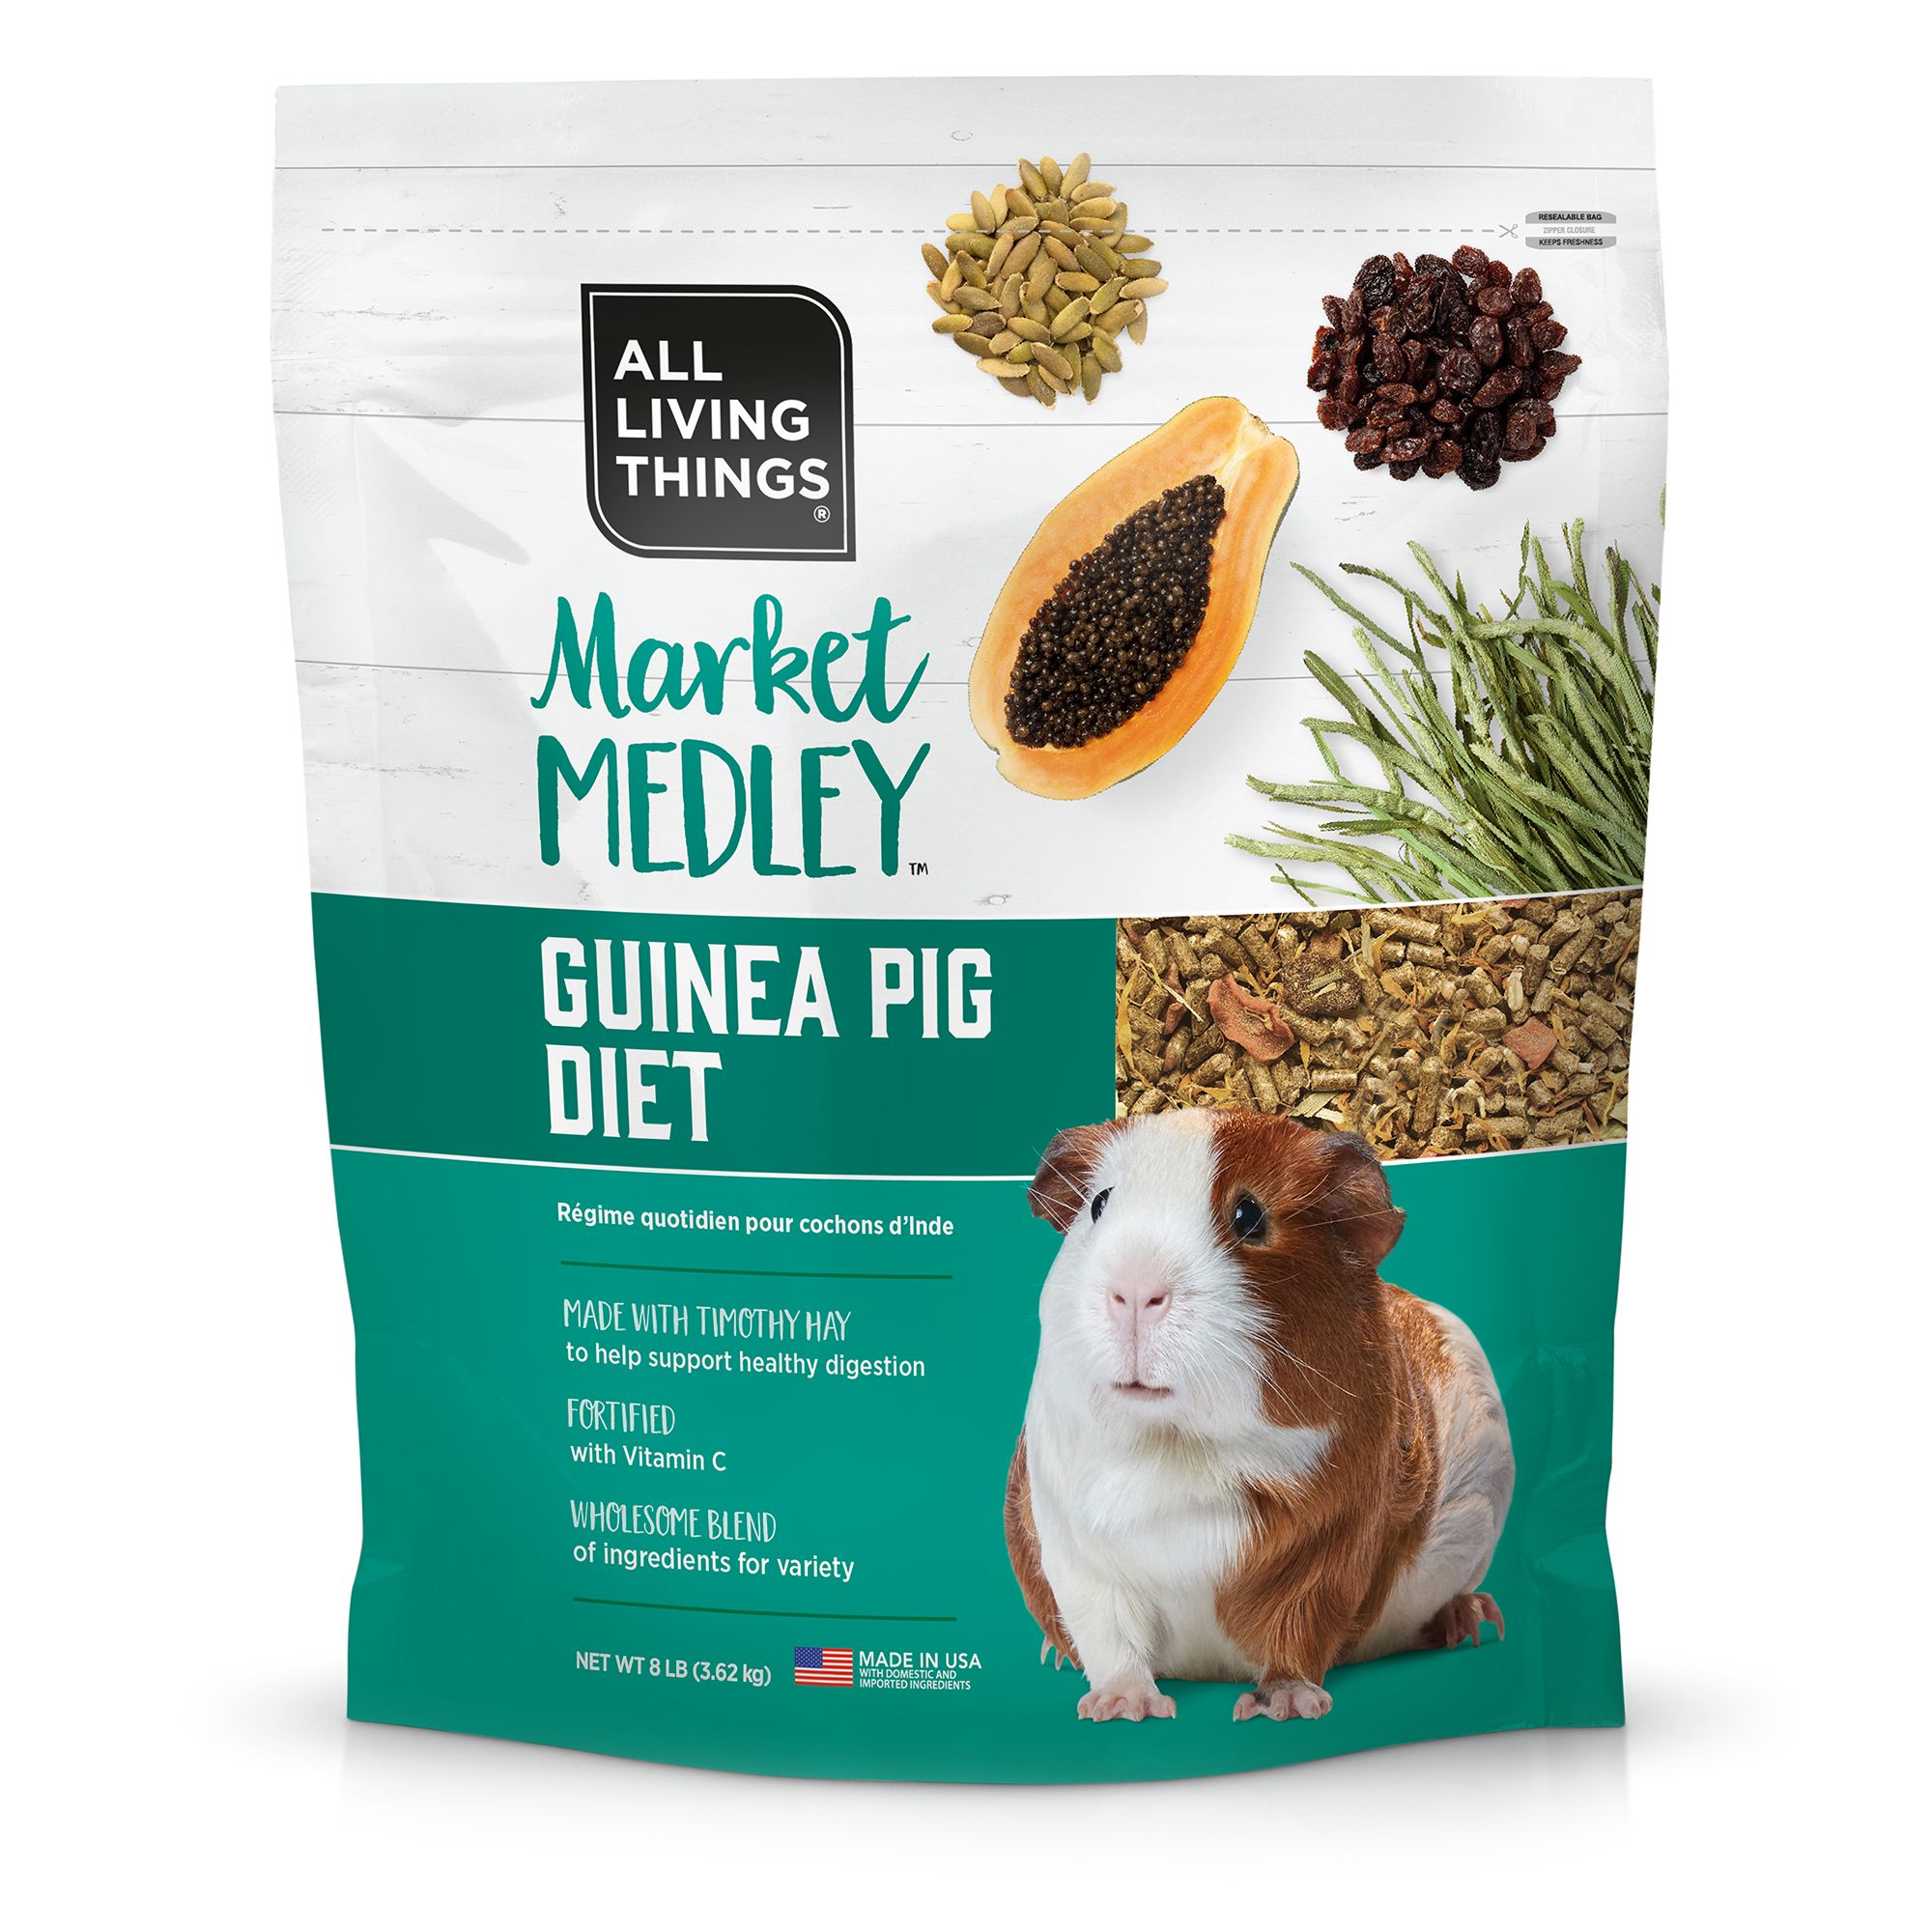 Medley\u0026trade; Guinea Pig Diet 